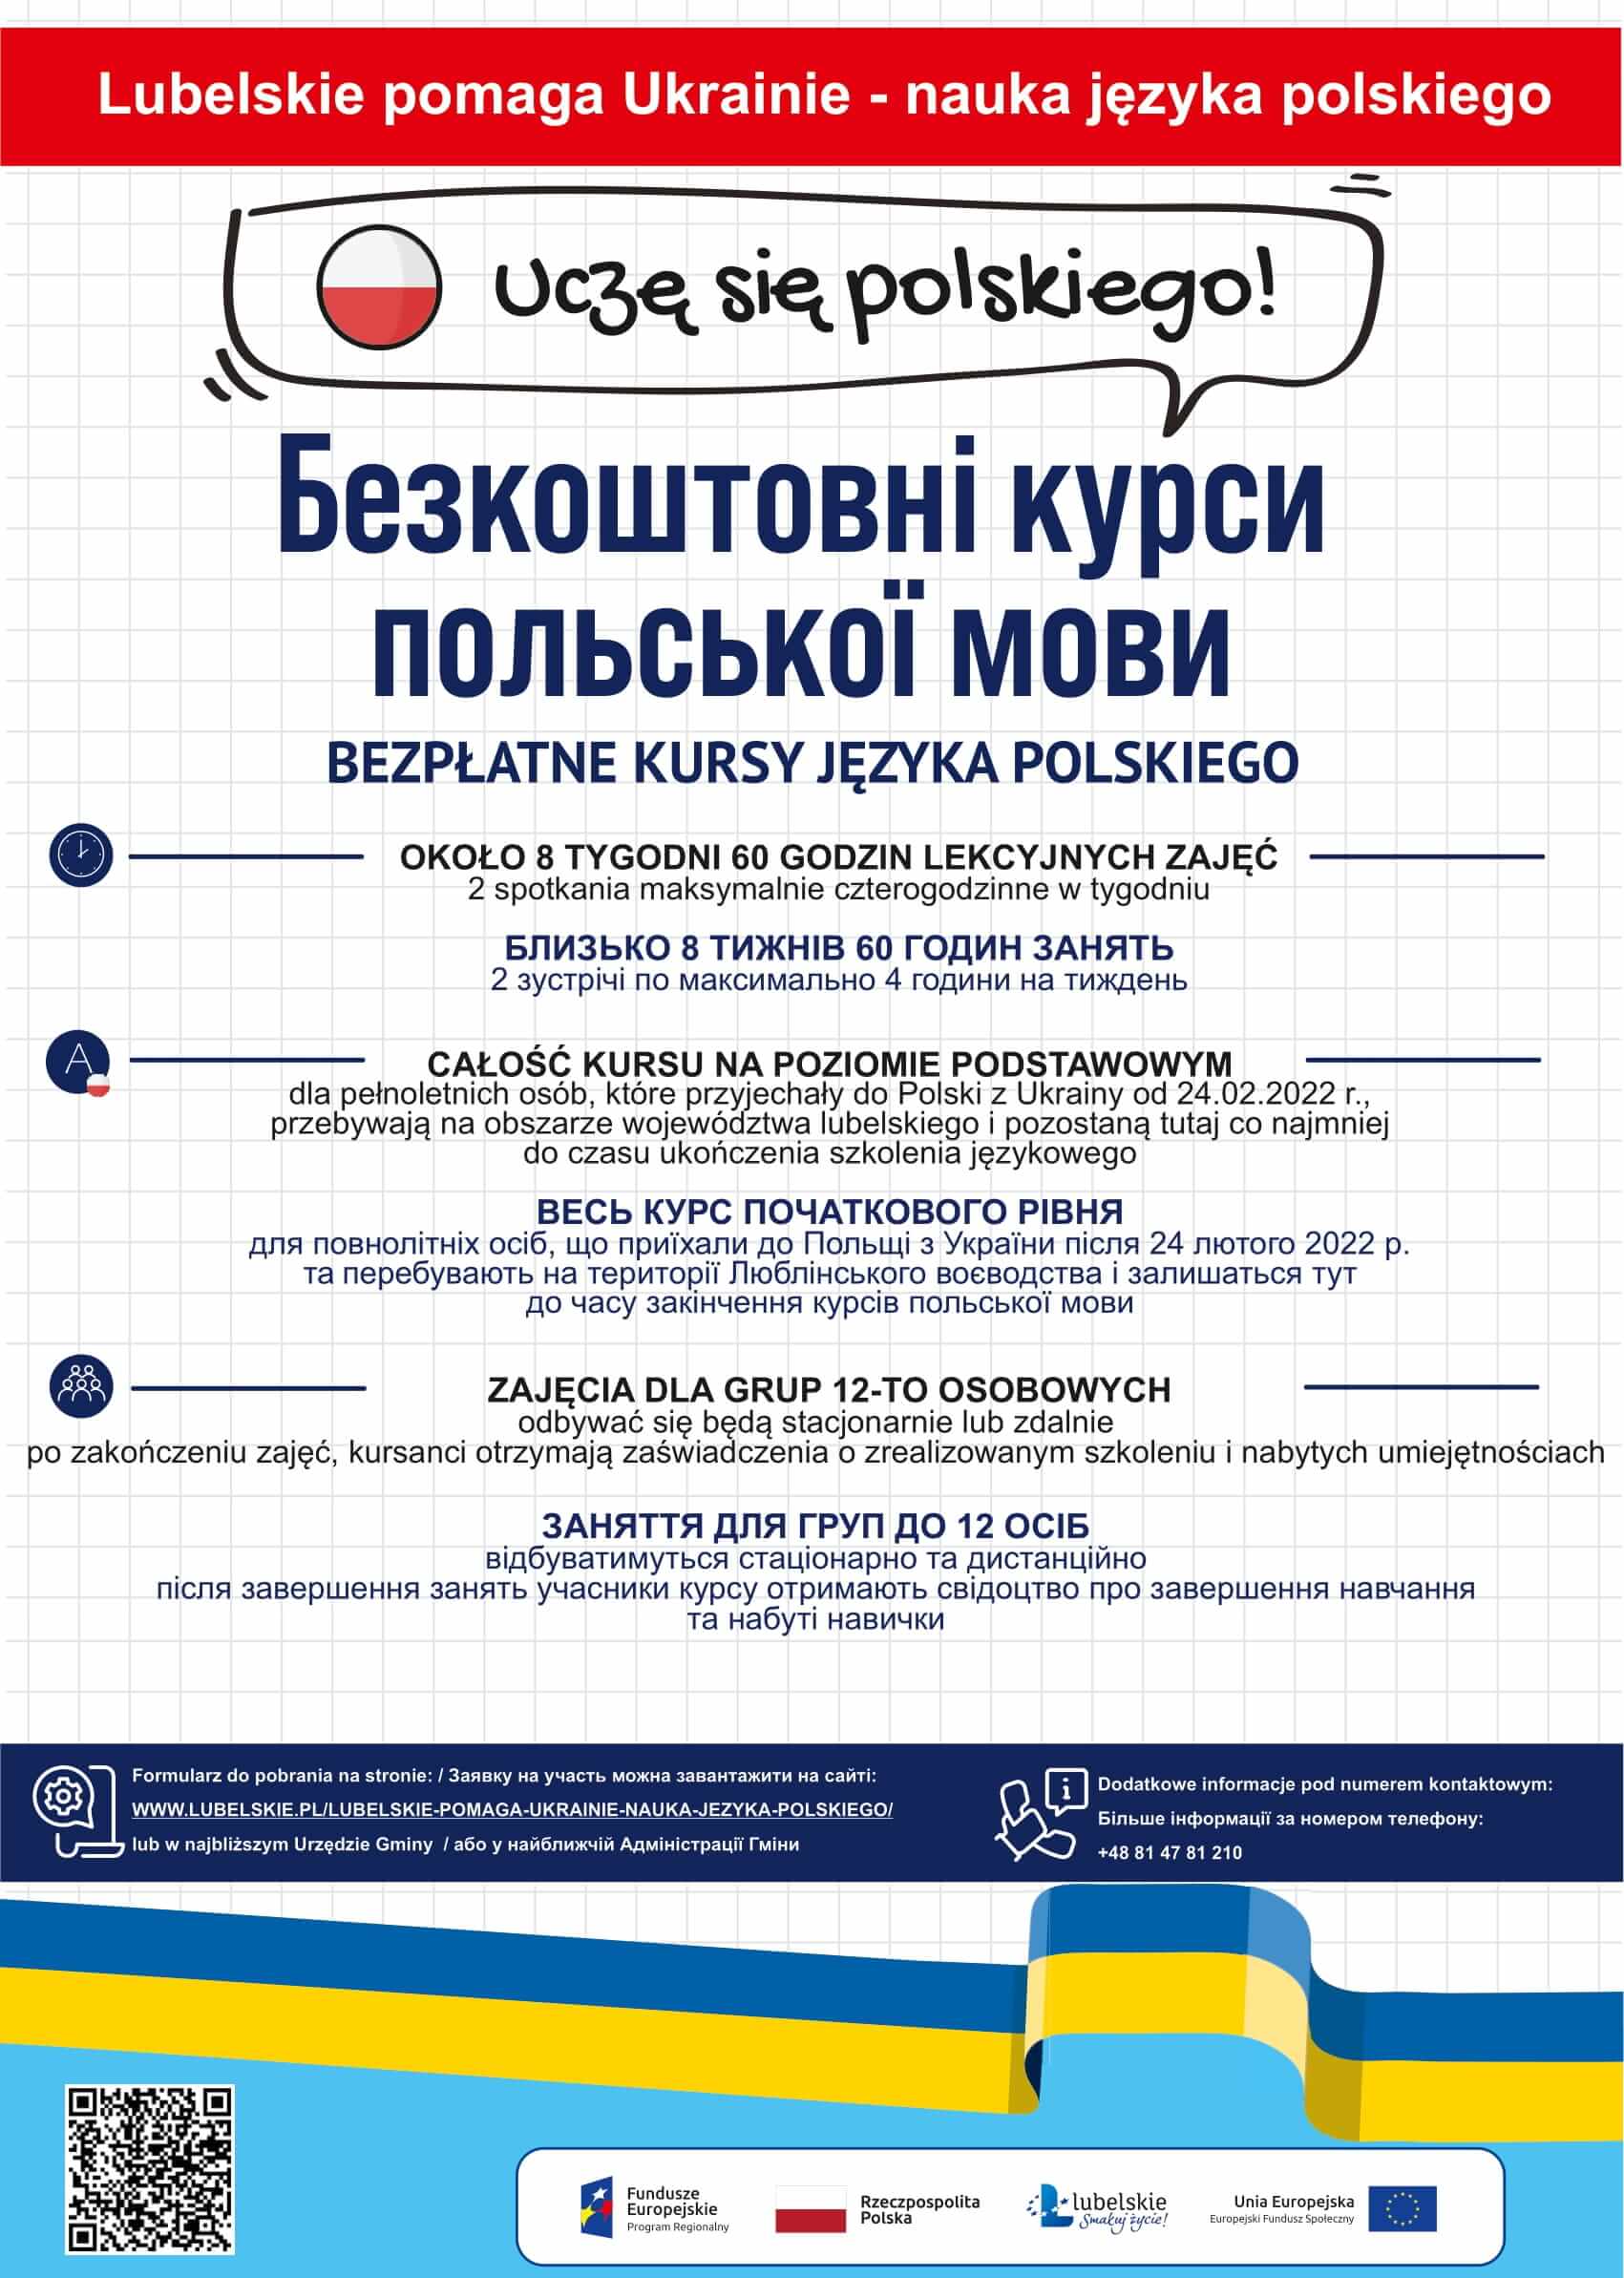 Plakat anonsujący wydarzenie, treść na plakacie zgodna z anonsem. Tekst w języku polskim i ukraińskim. 